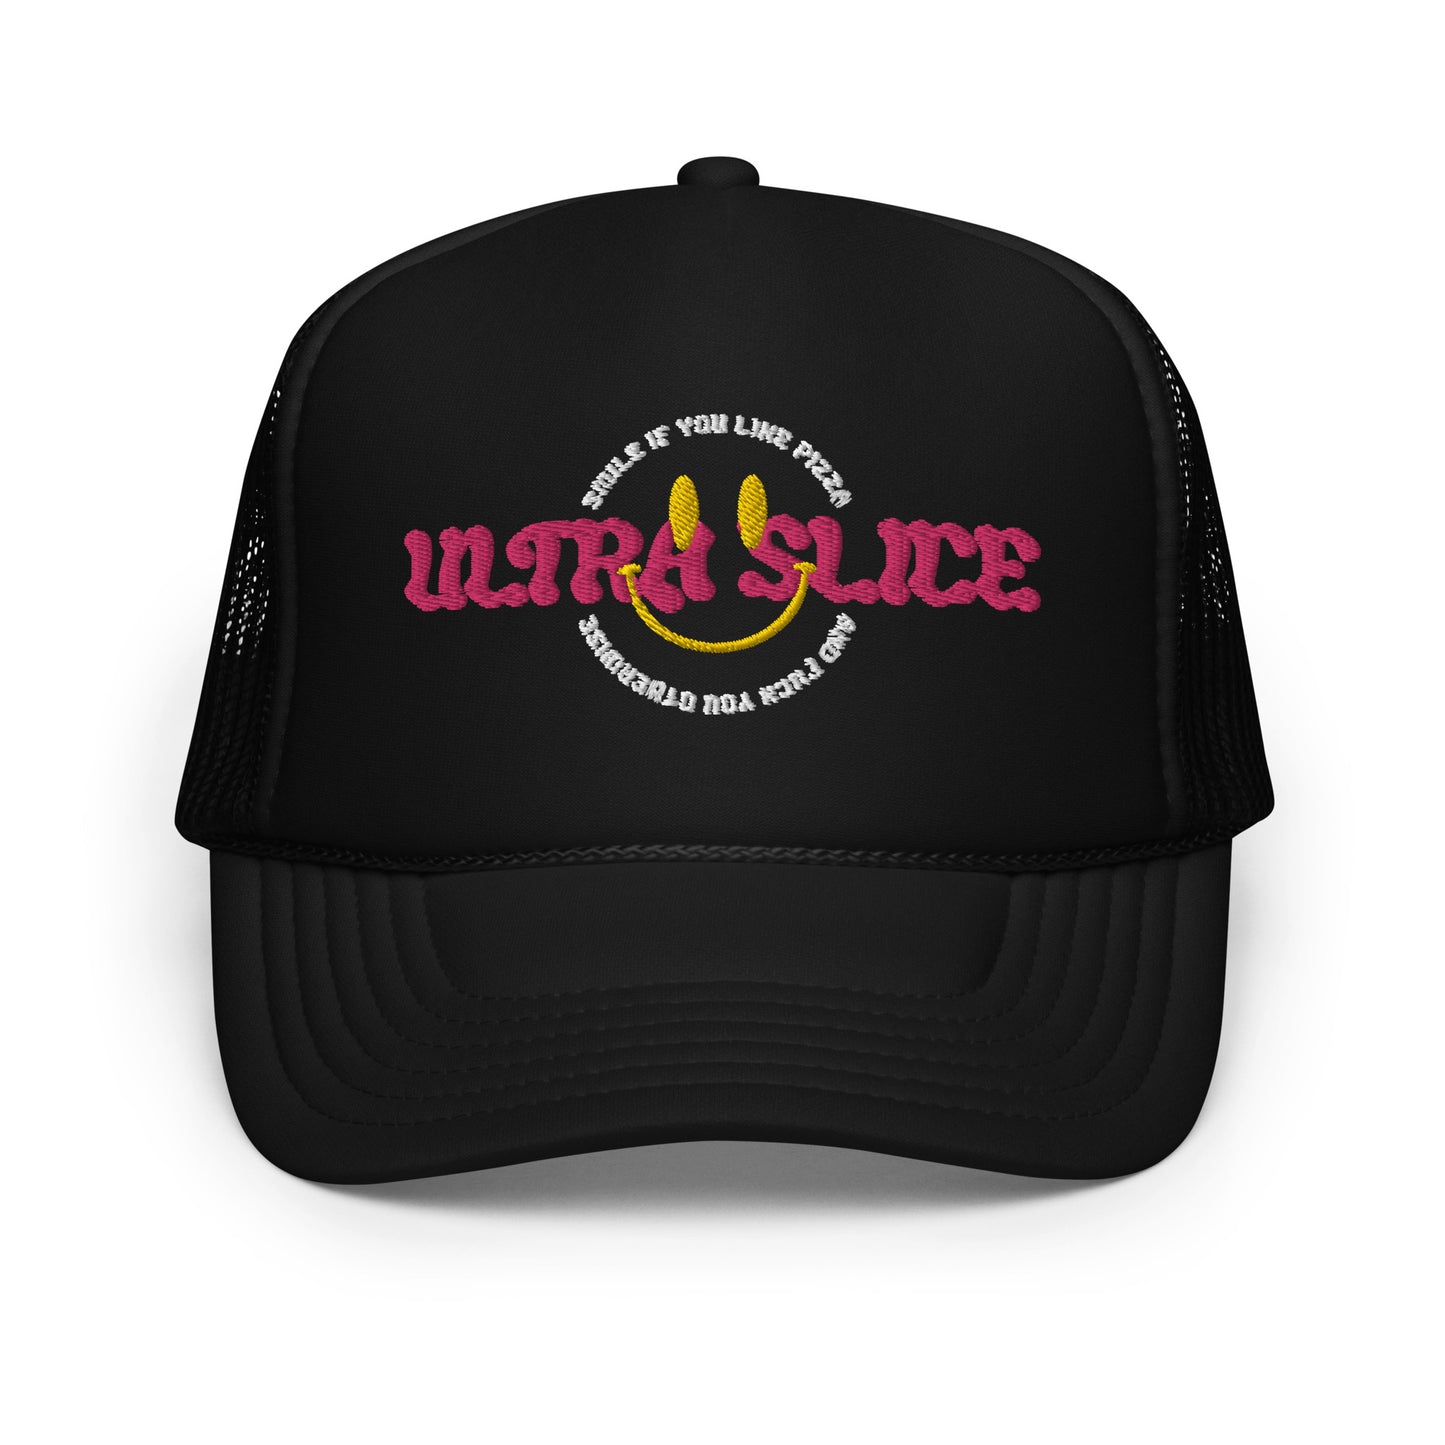 Ultra Slice - Polite F.U. Foam Trucker Hat